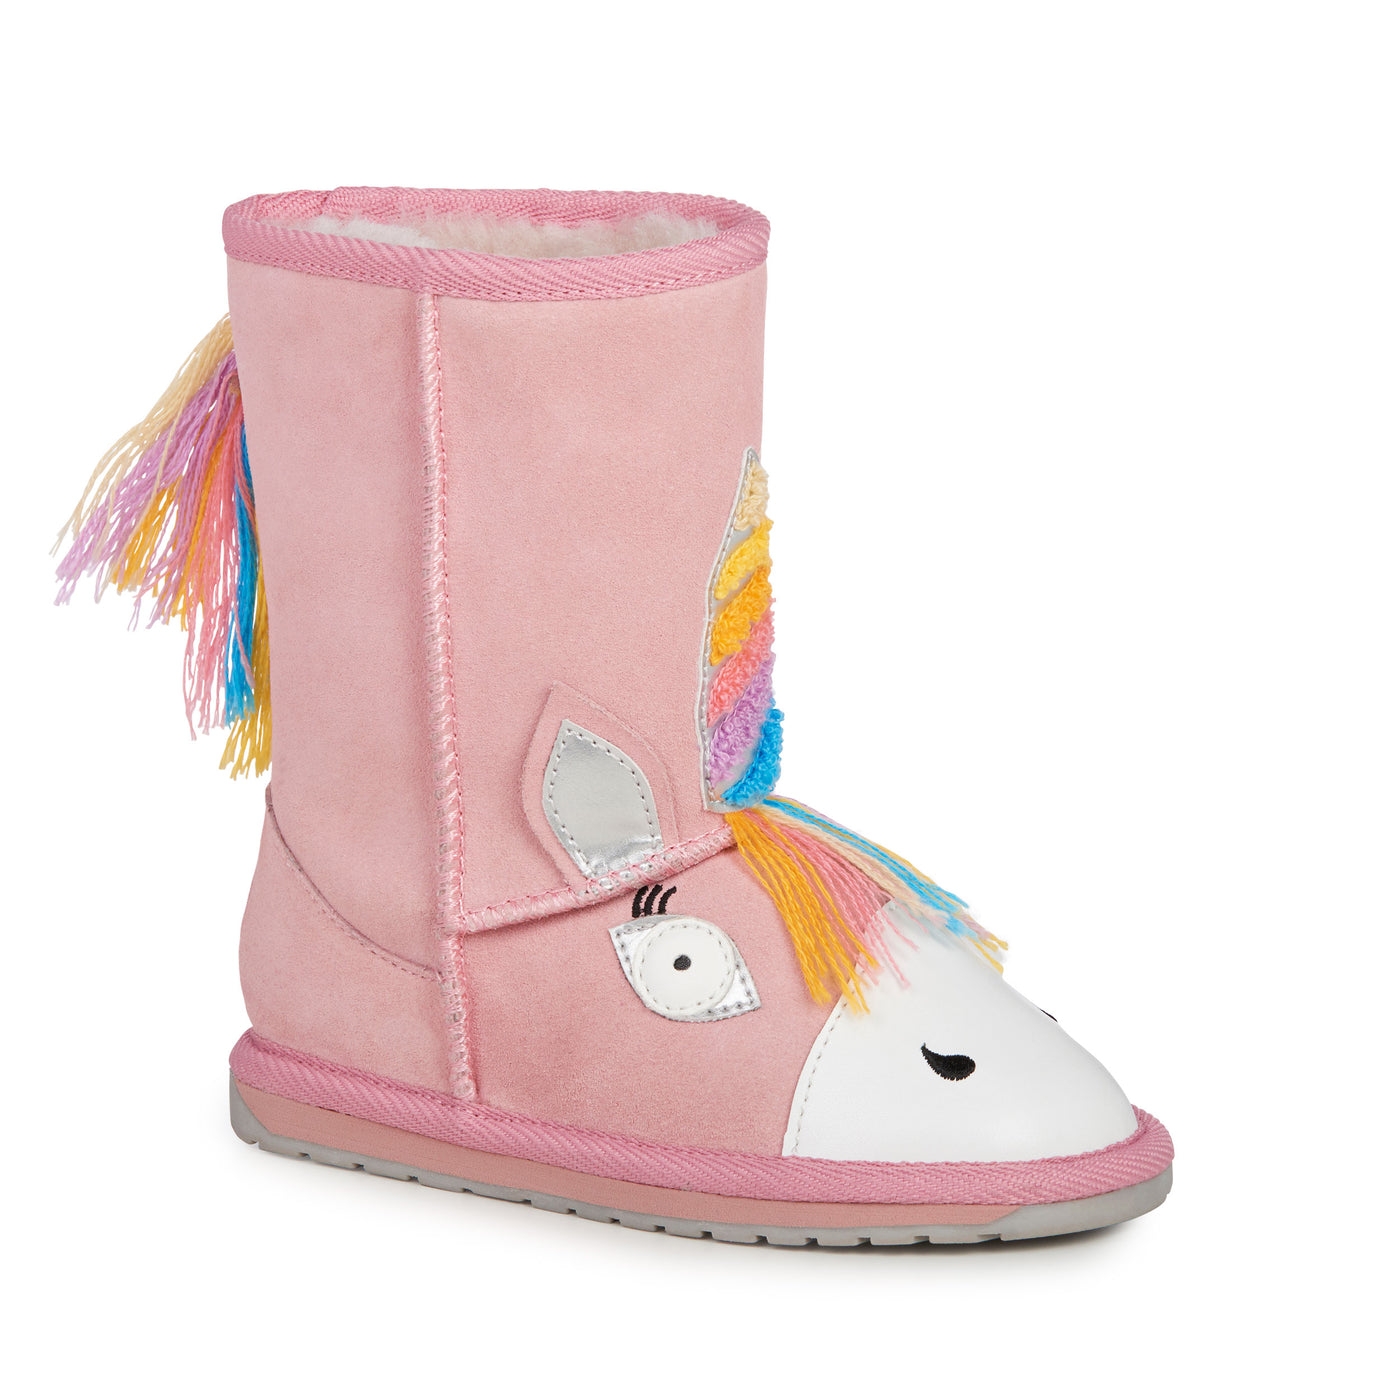 Emu Winter Boots - Magical Unicorn Walker - Pink